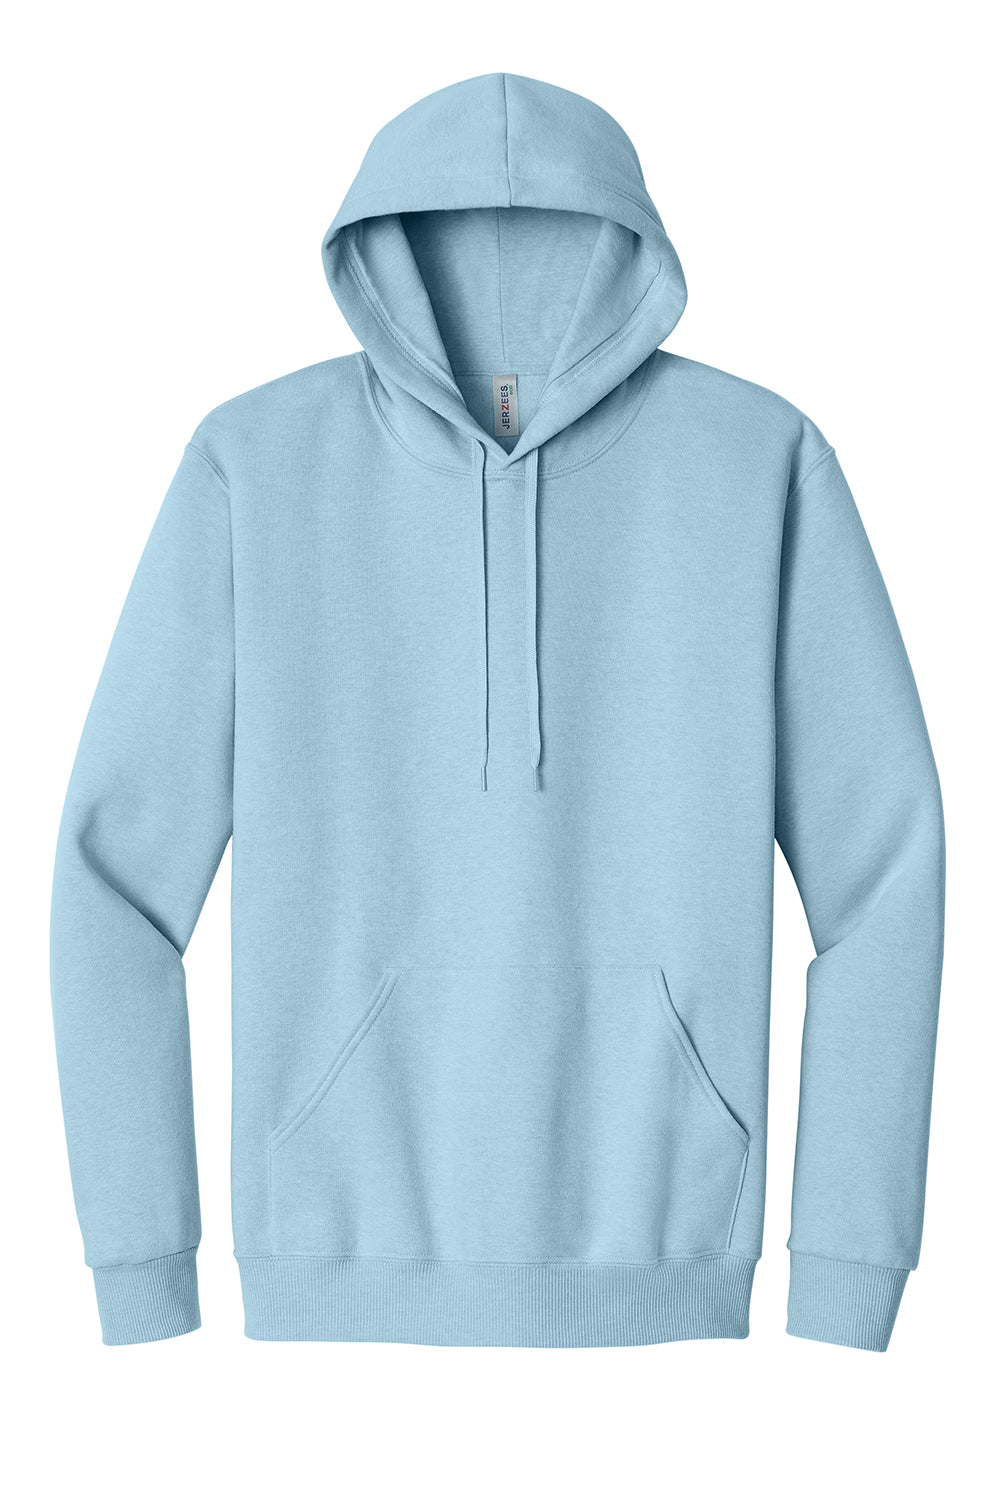 Jerzees 700M Mens Eco Premium Hooded Sweatshirt Hoodie Heather Cloud Blue Flat Front